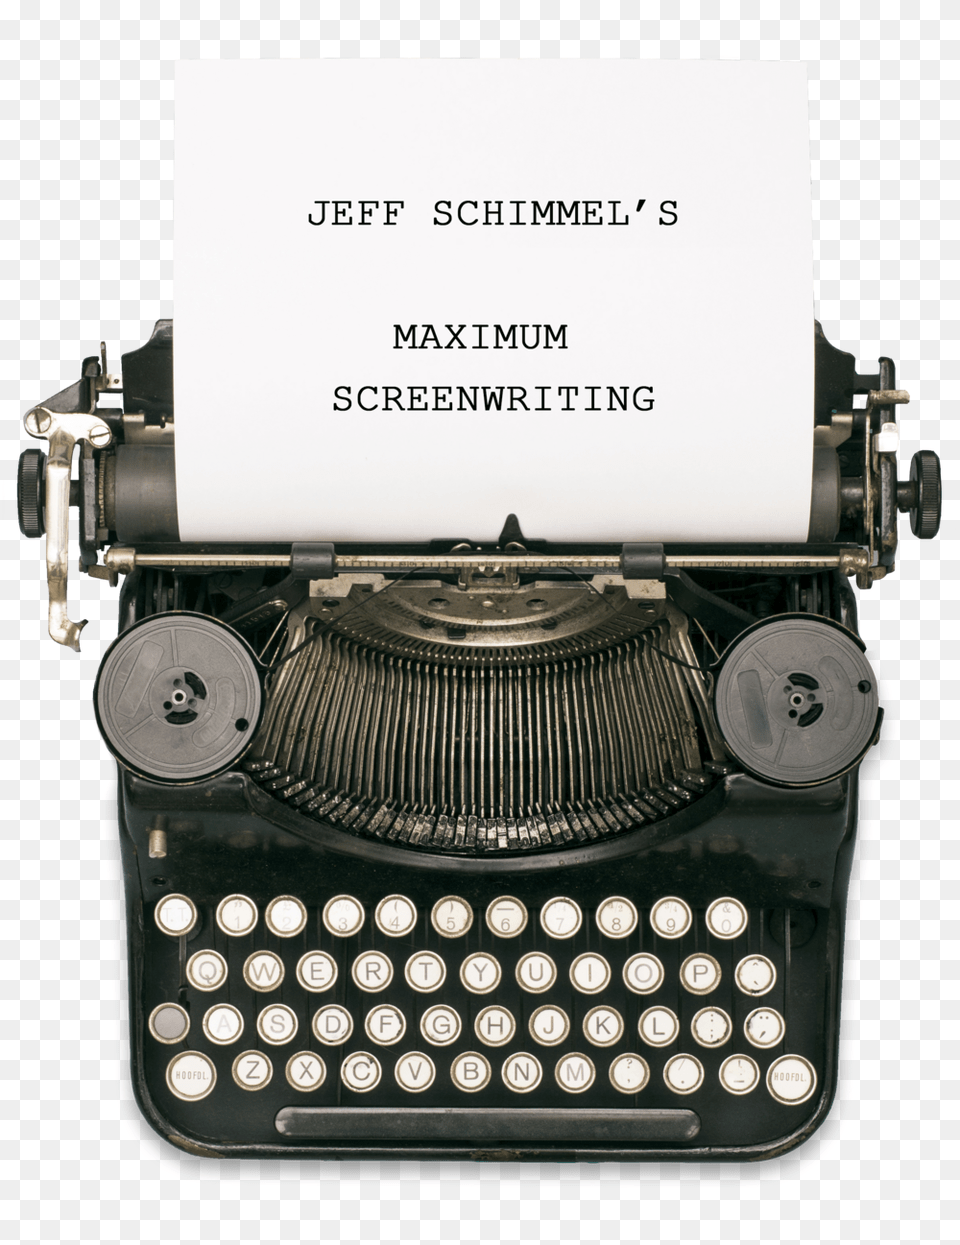 Typewriter, Computer Hardware, Electronics, Hardware, Machine Png Image